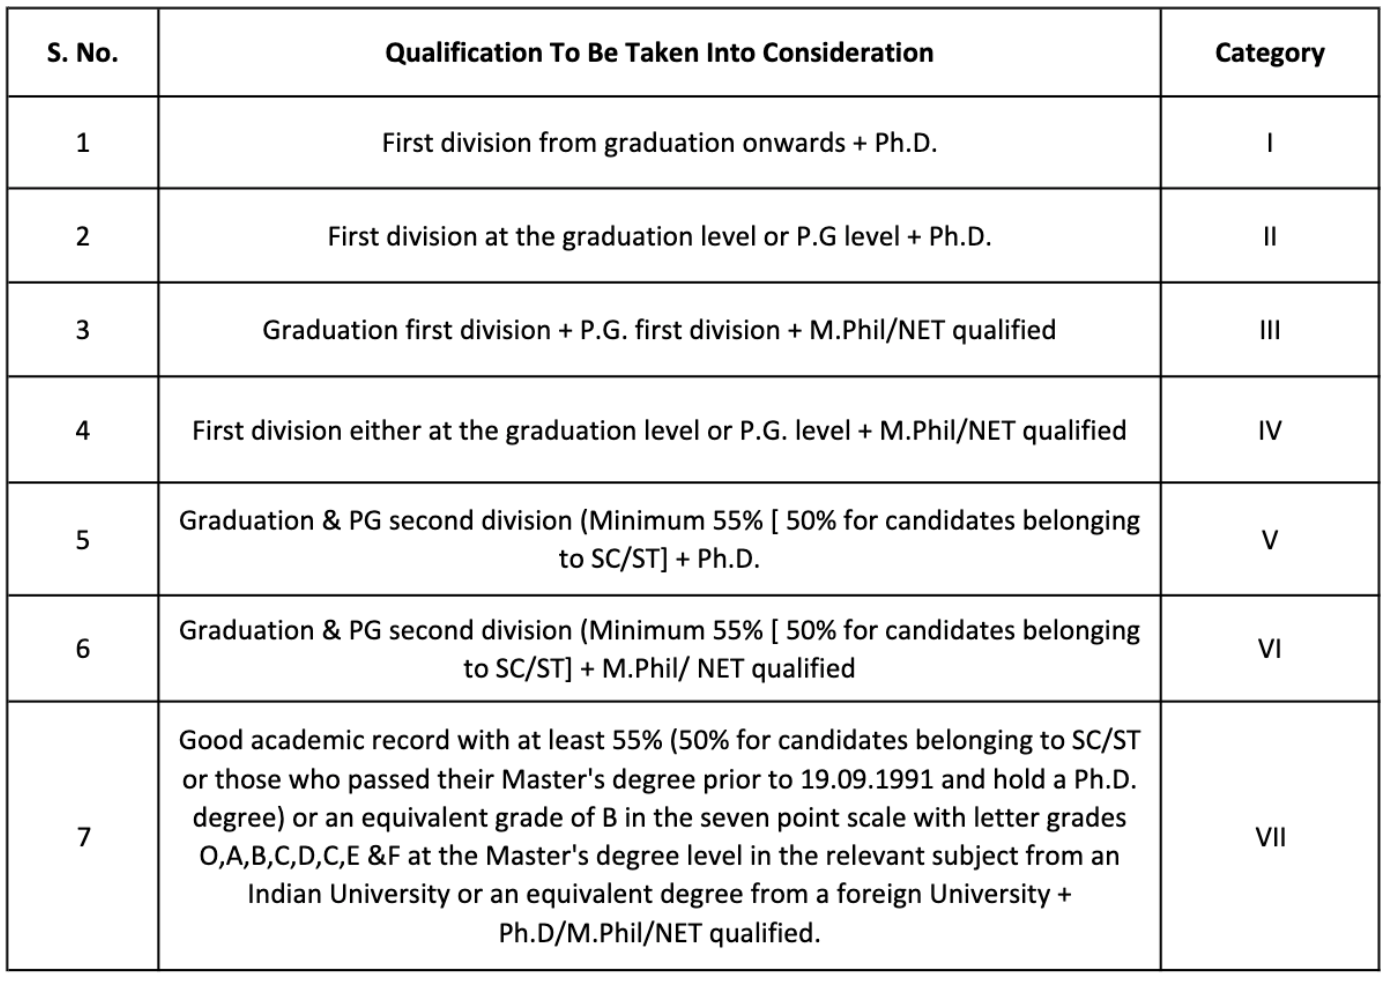 adhoc qualification for various categories